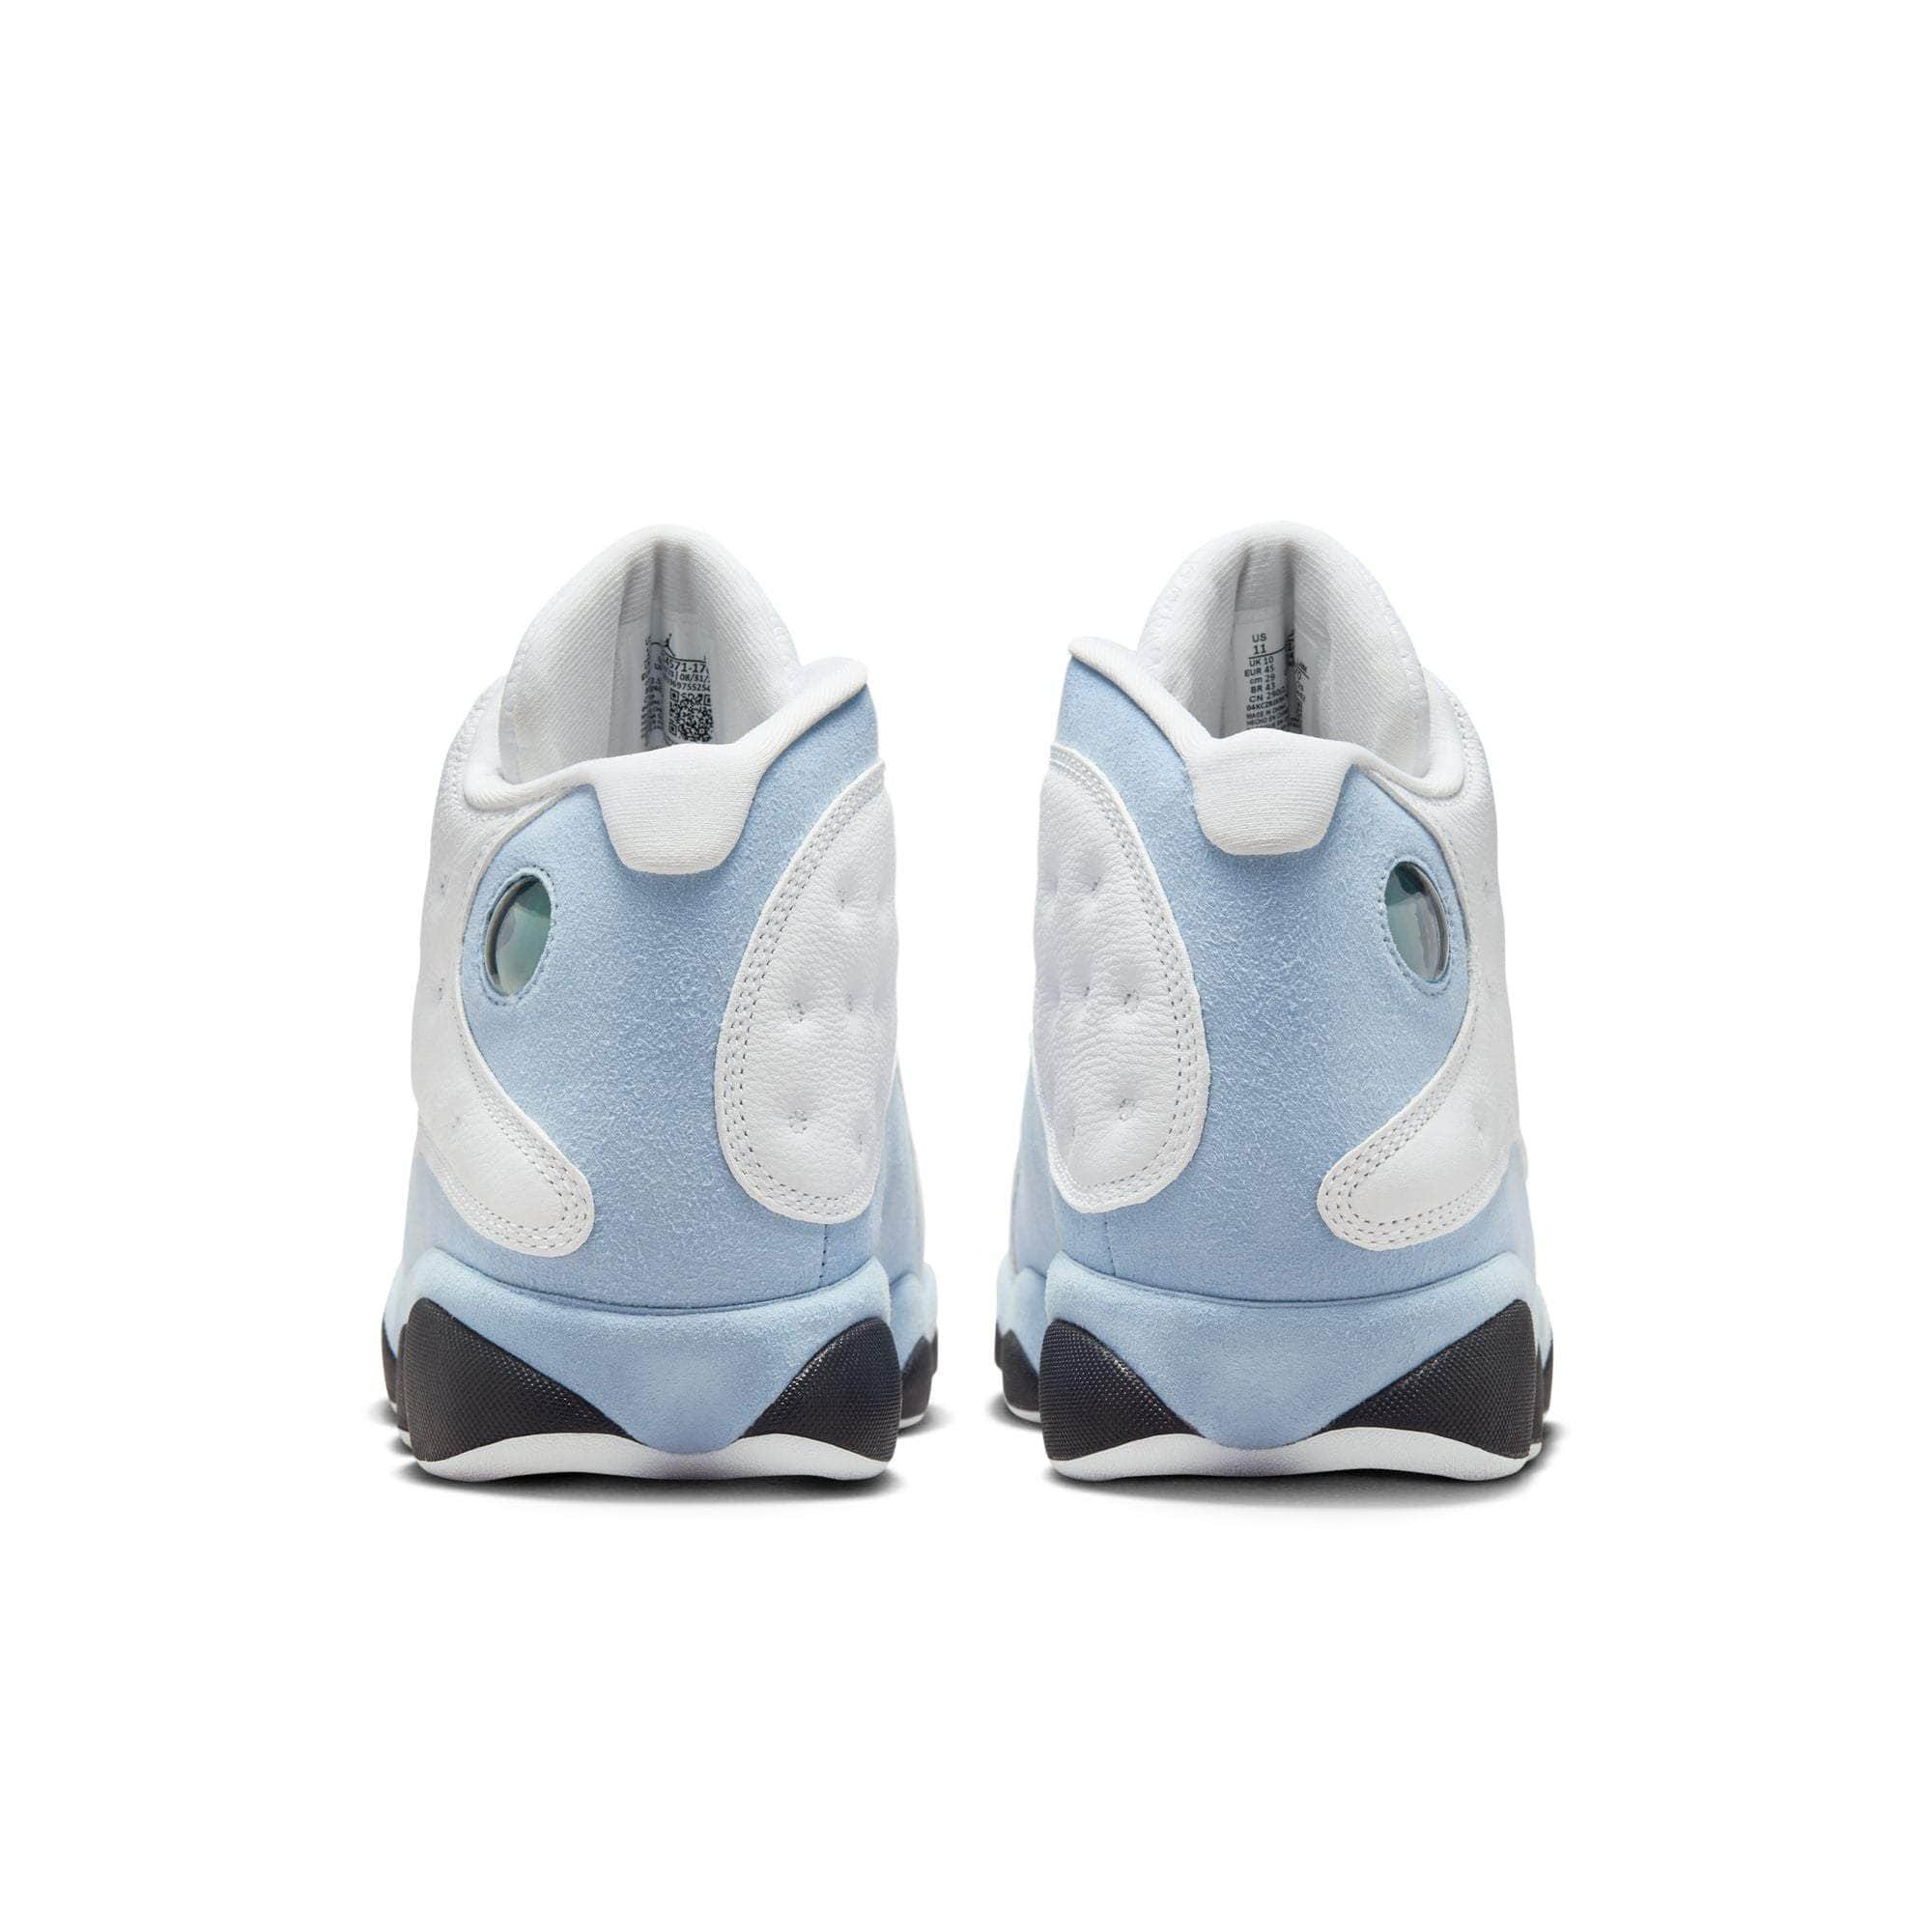 Air Jordan Footwear Air Jordan 13 Retro “Blue Grey” - Men's